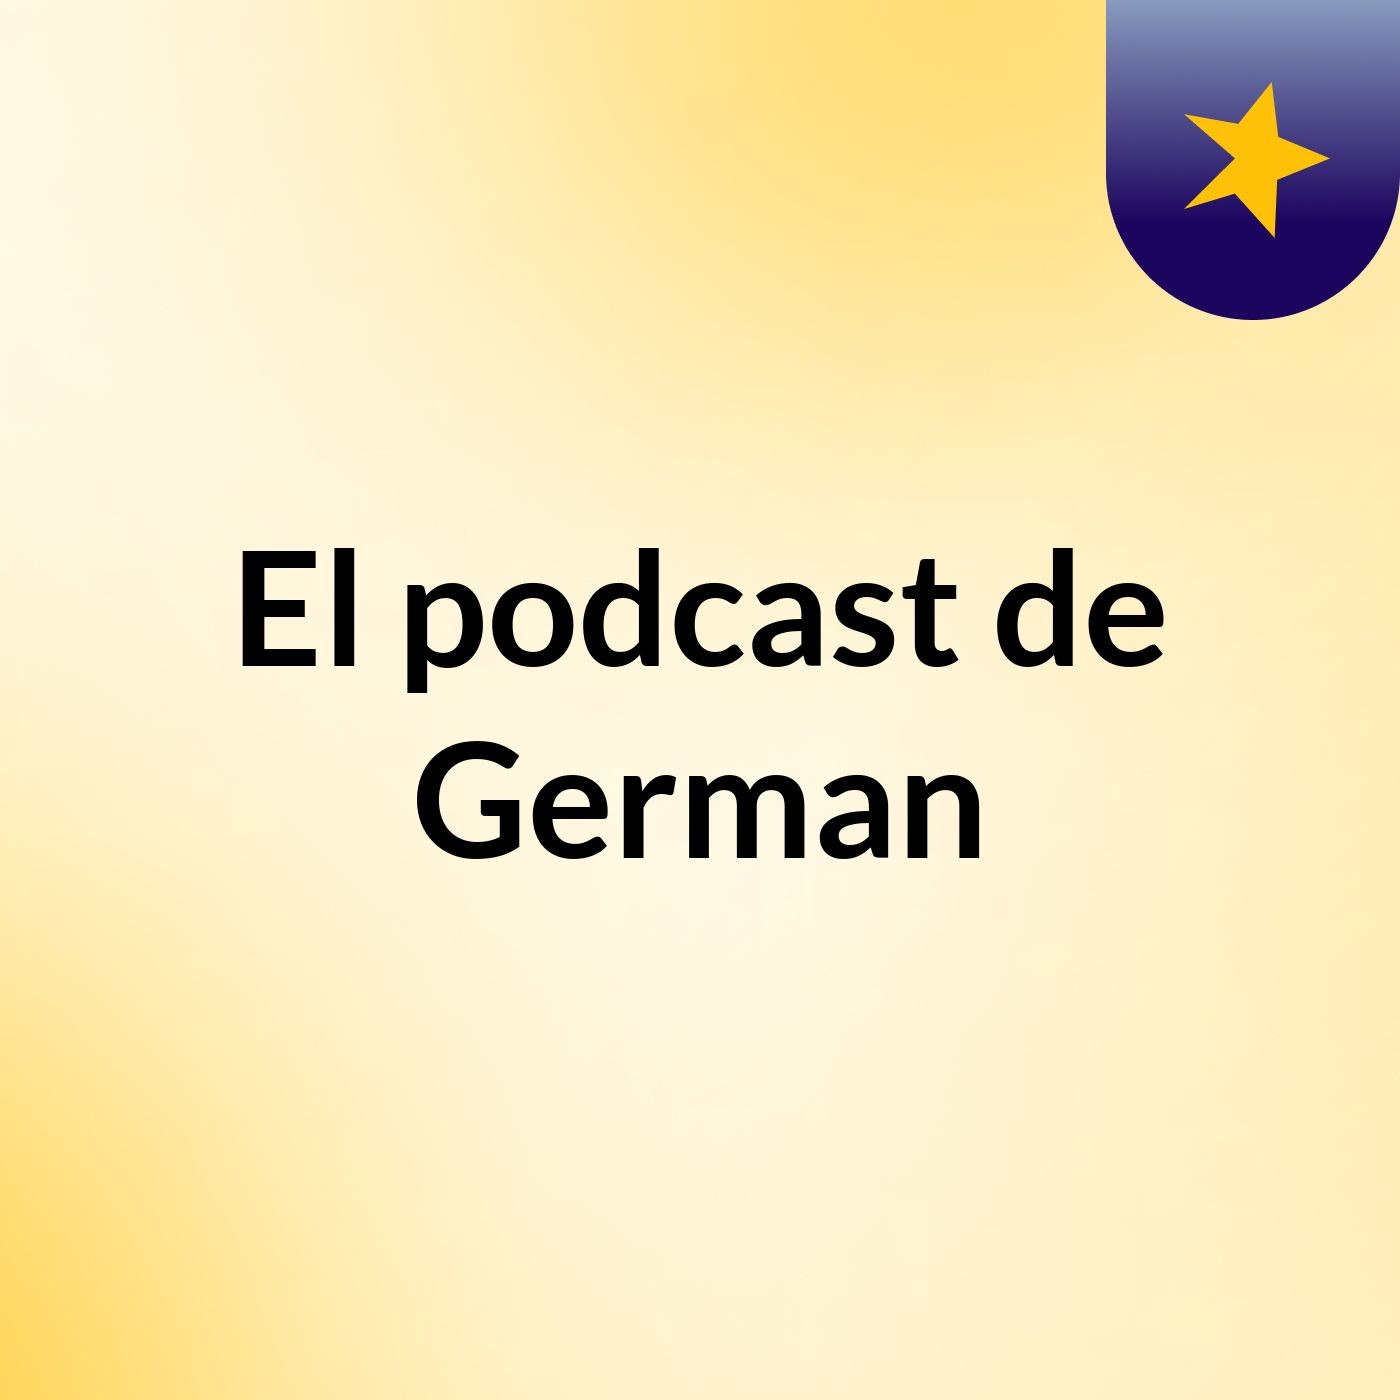 Episodio 2 - El podcast de German